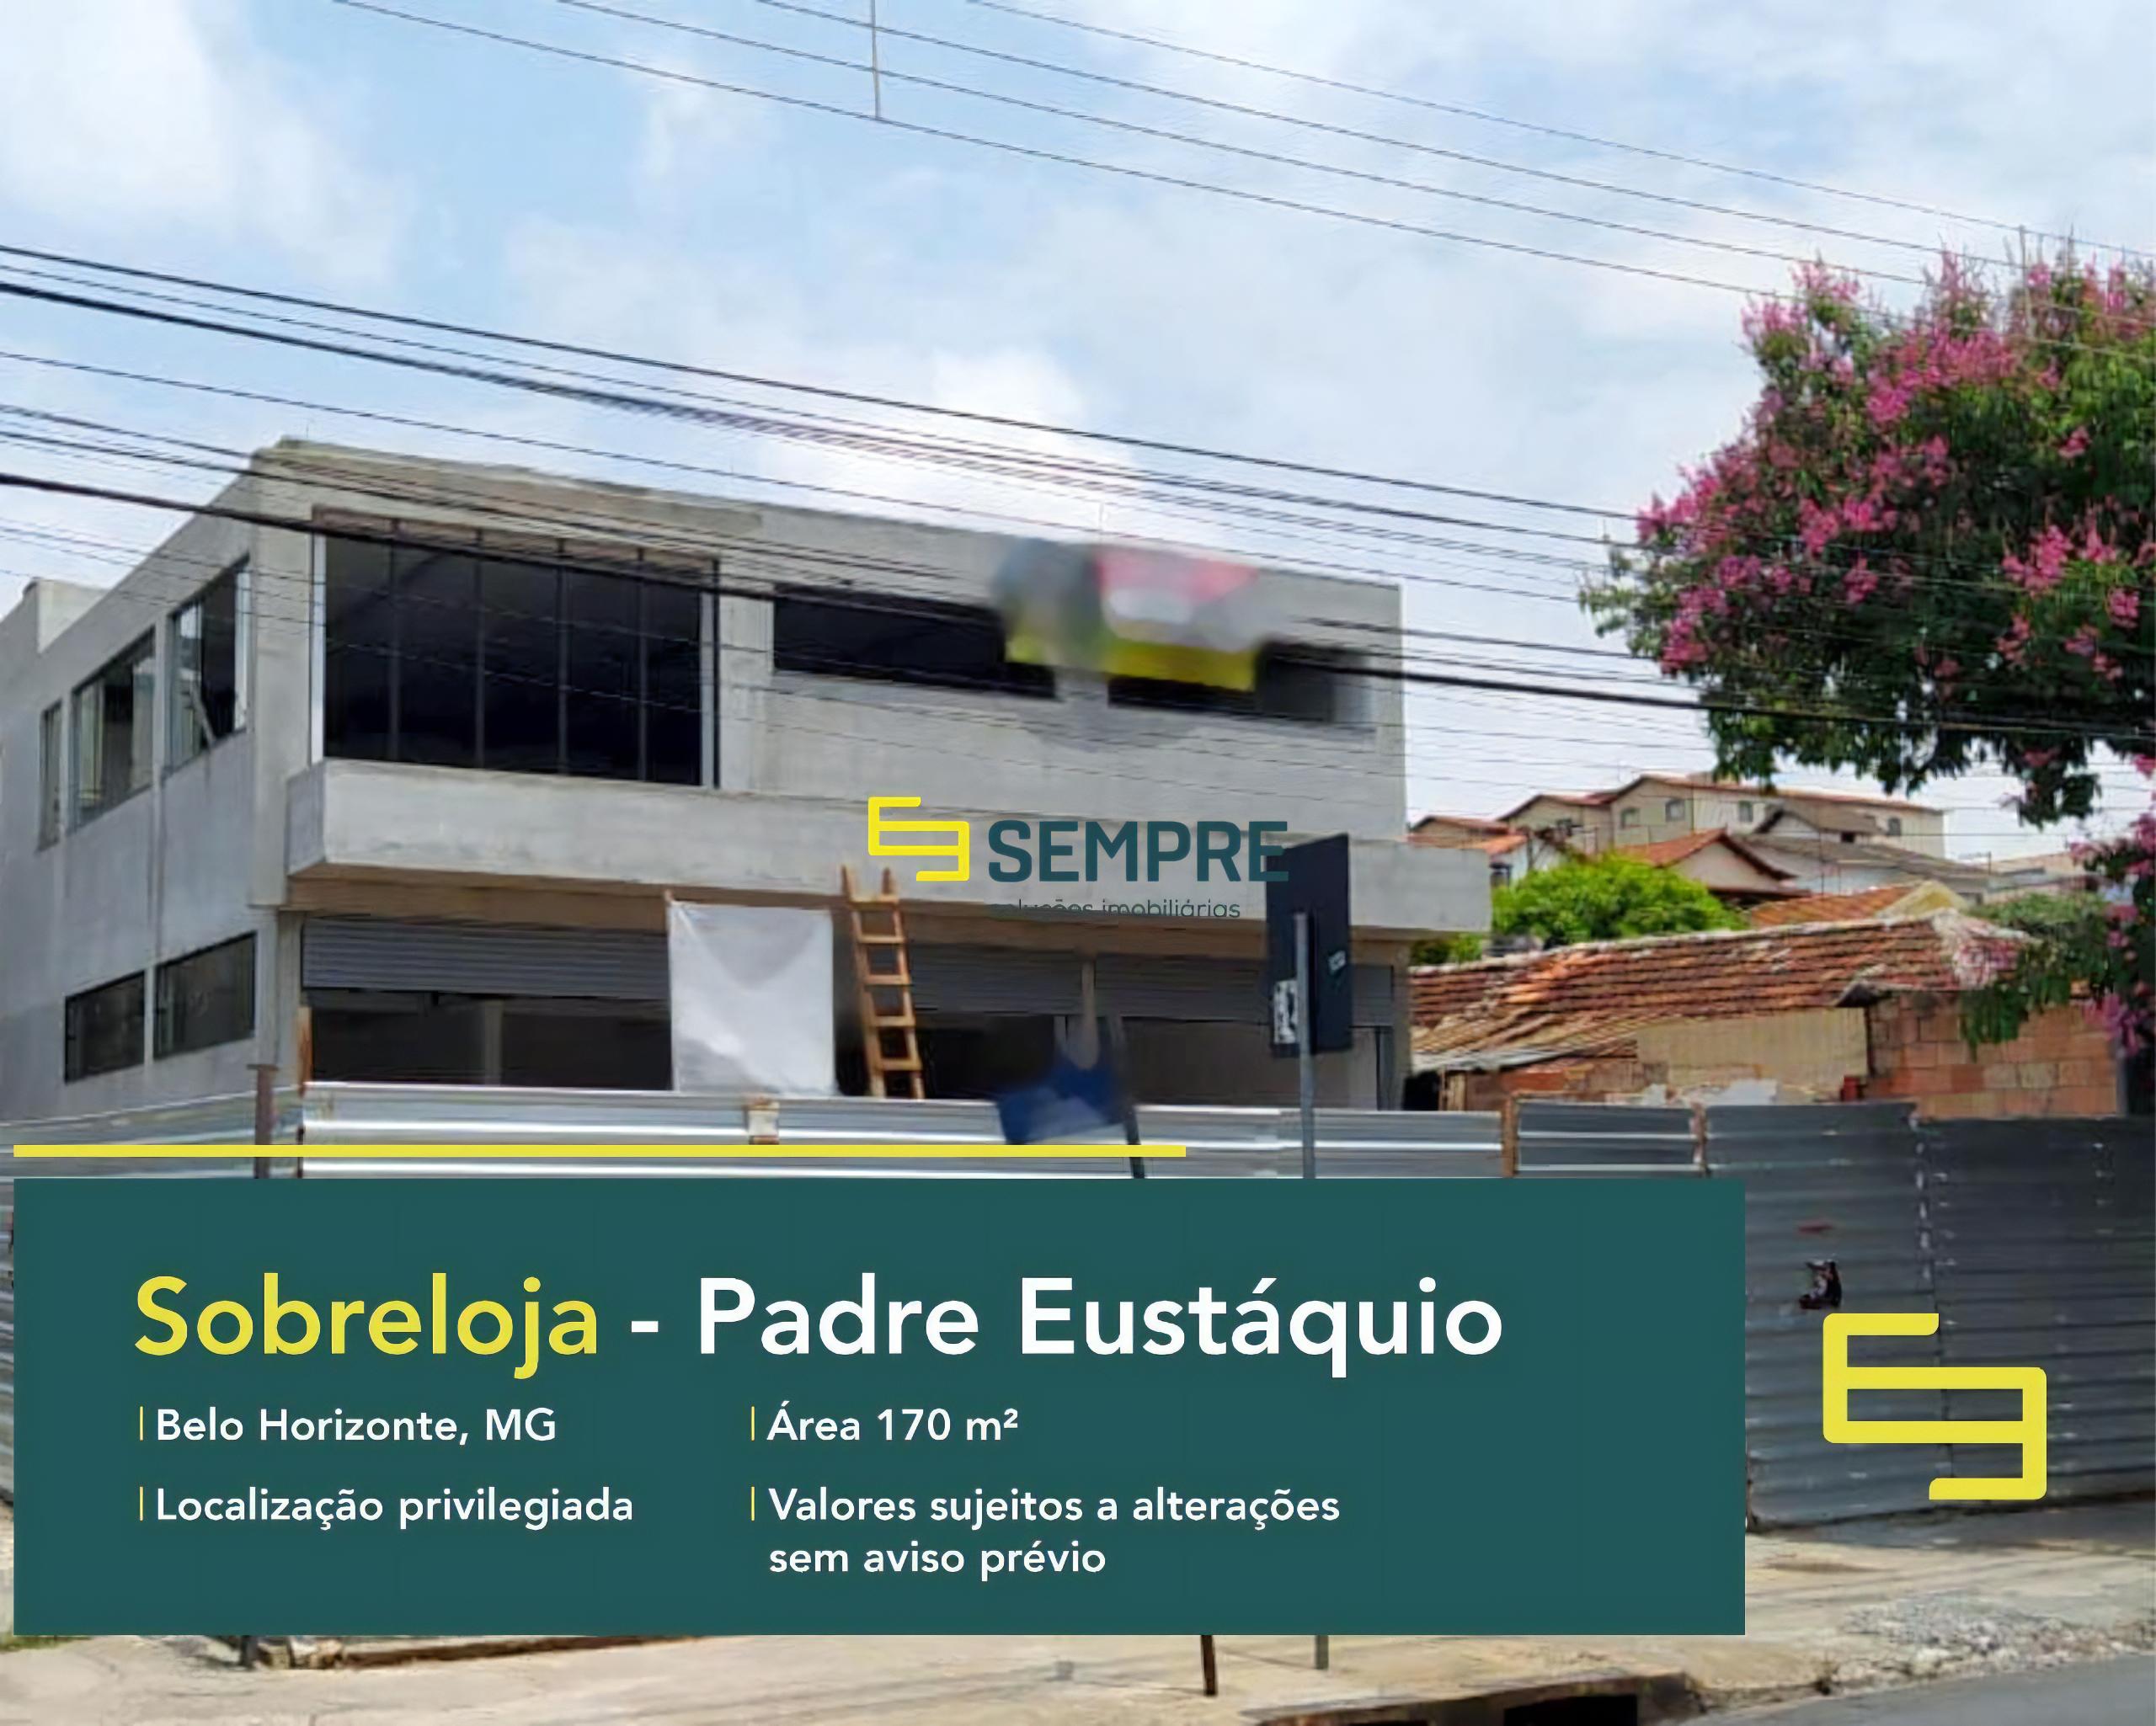 Sobreloja para alugar no Padre Eustáquio em Belo Horizonte, excelente localização. O estabelecimento comercial conta com área de 170 m².